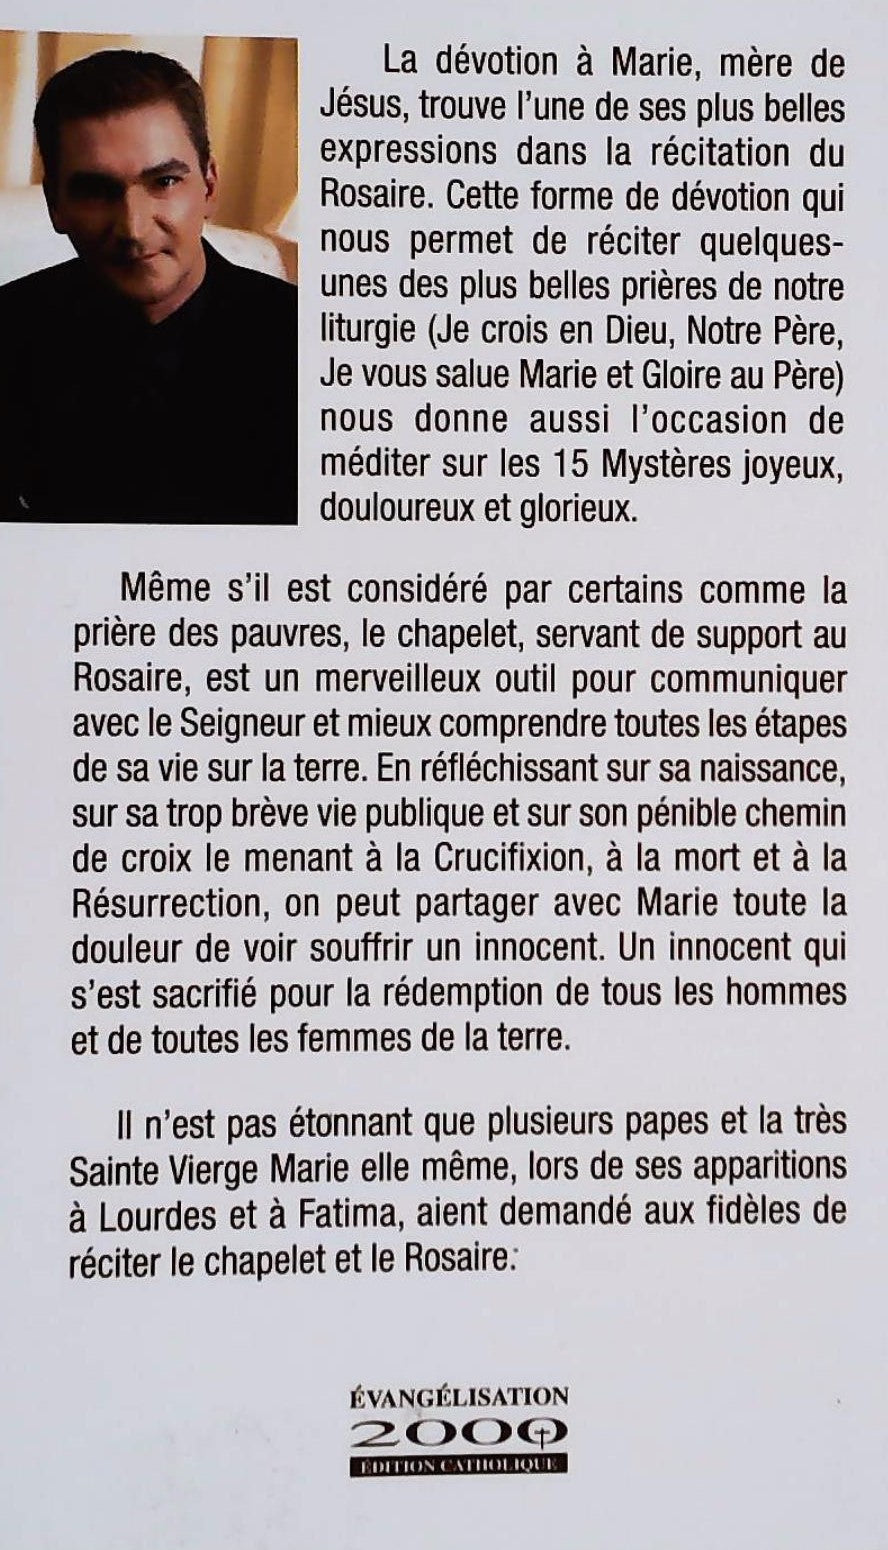 Le rosaire : prions Marie, Mère de tendresse (Sylvain Charron)